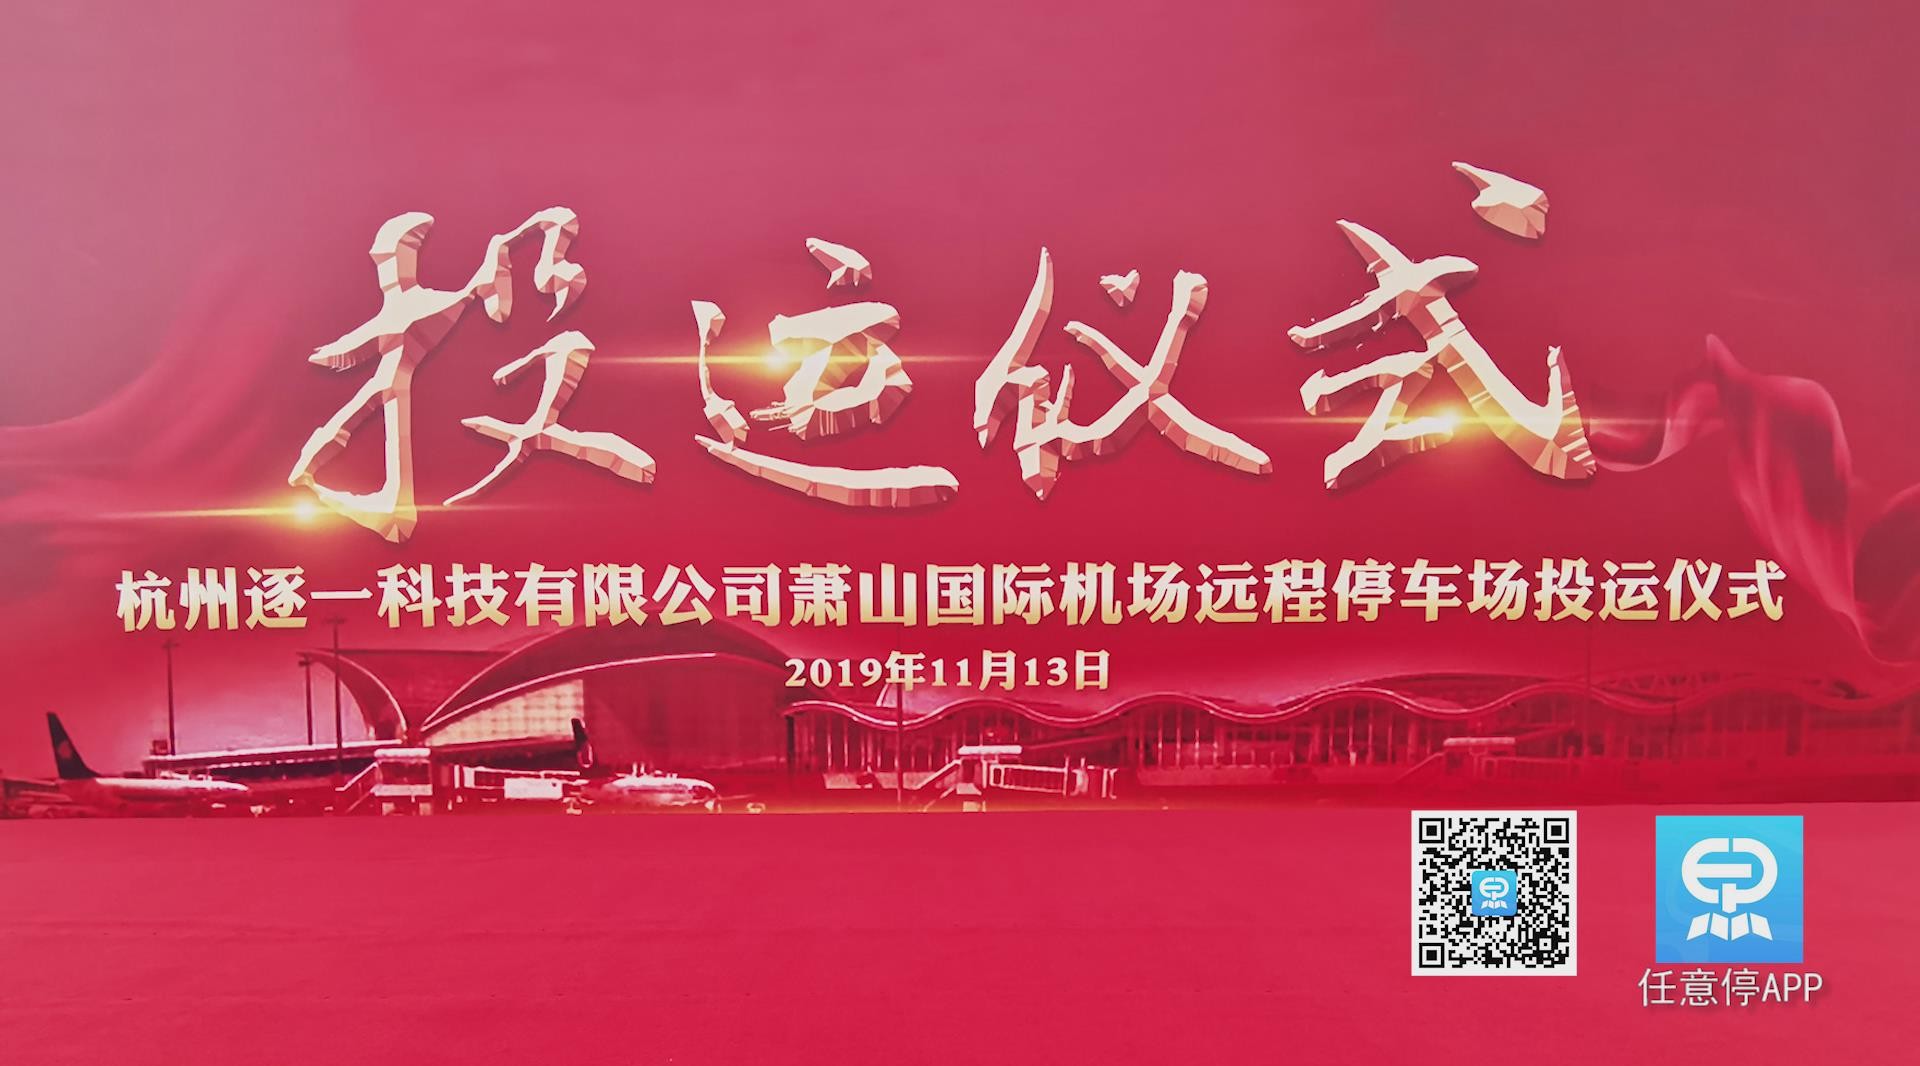 杭州逐一科技萧山国际机场远程停车场投运仪式 